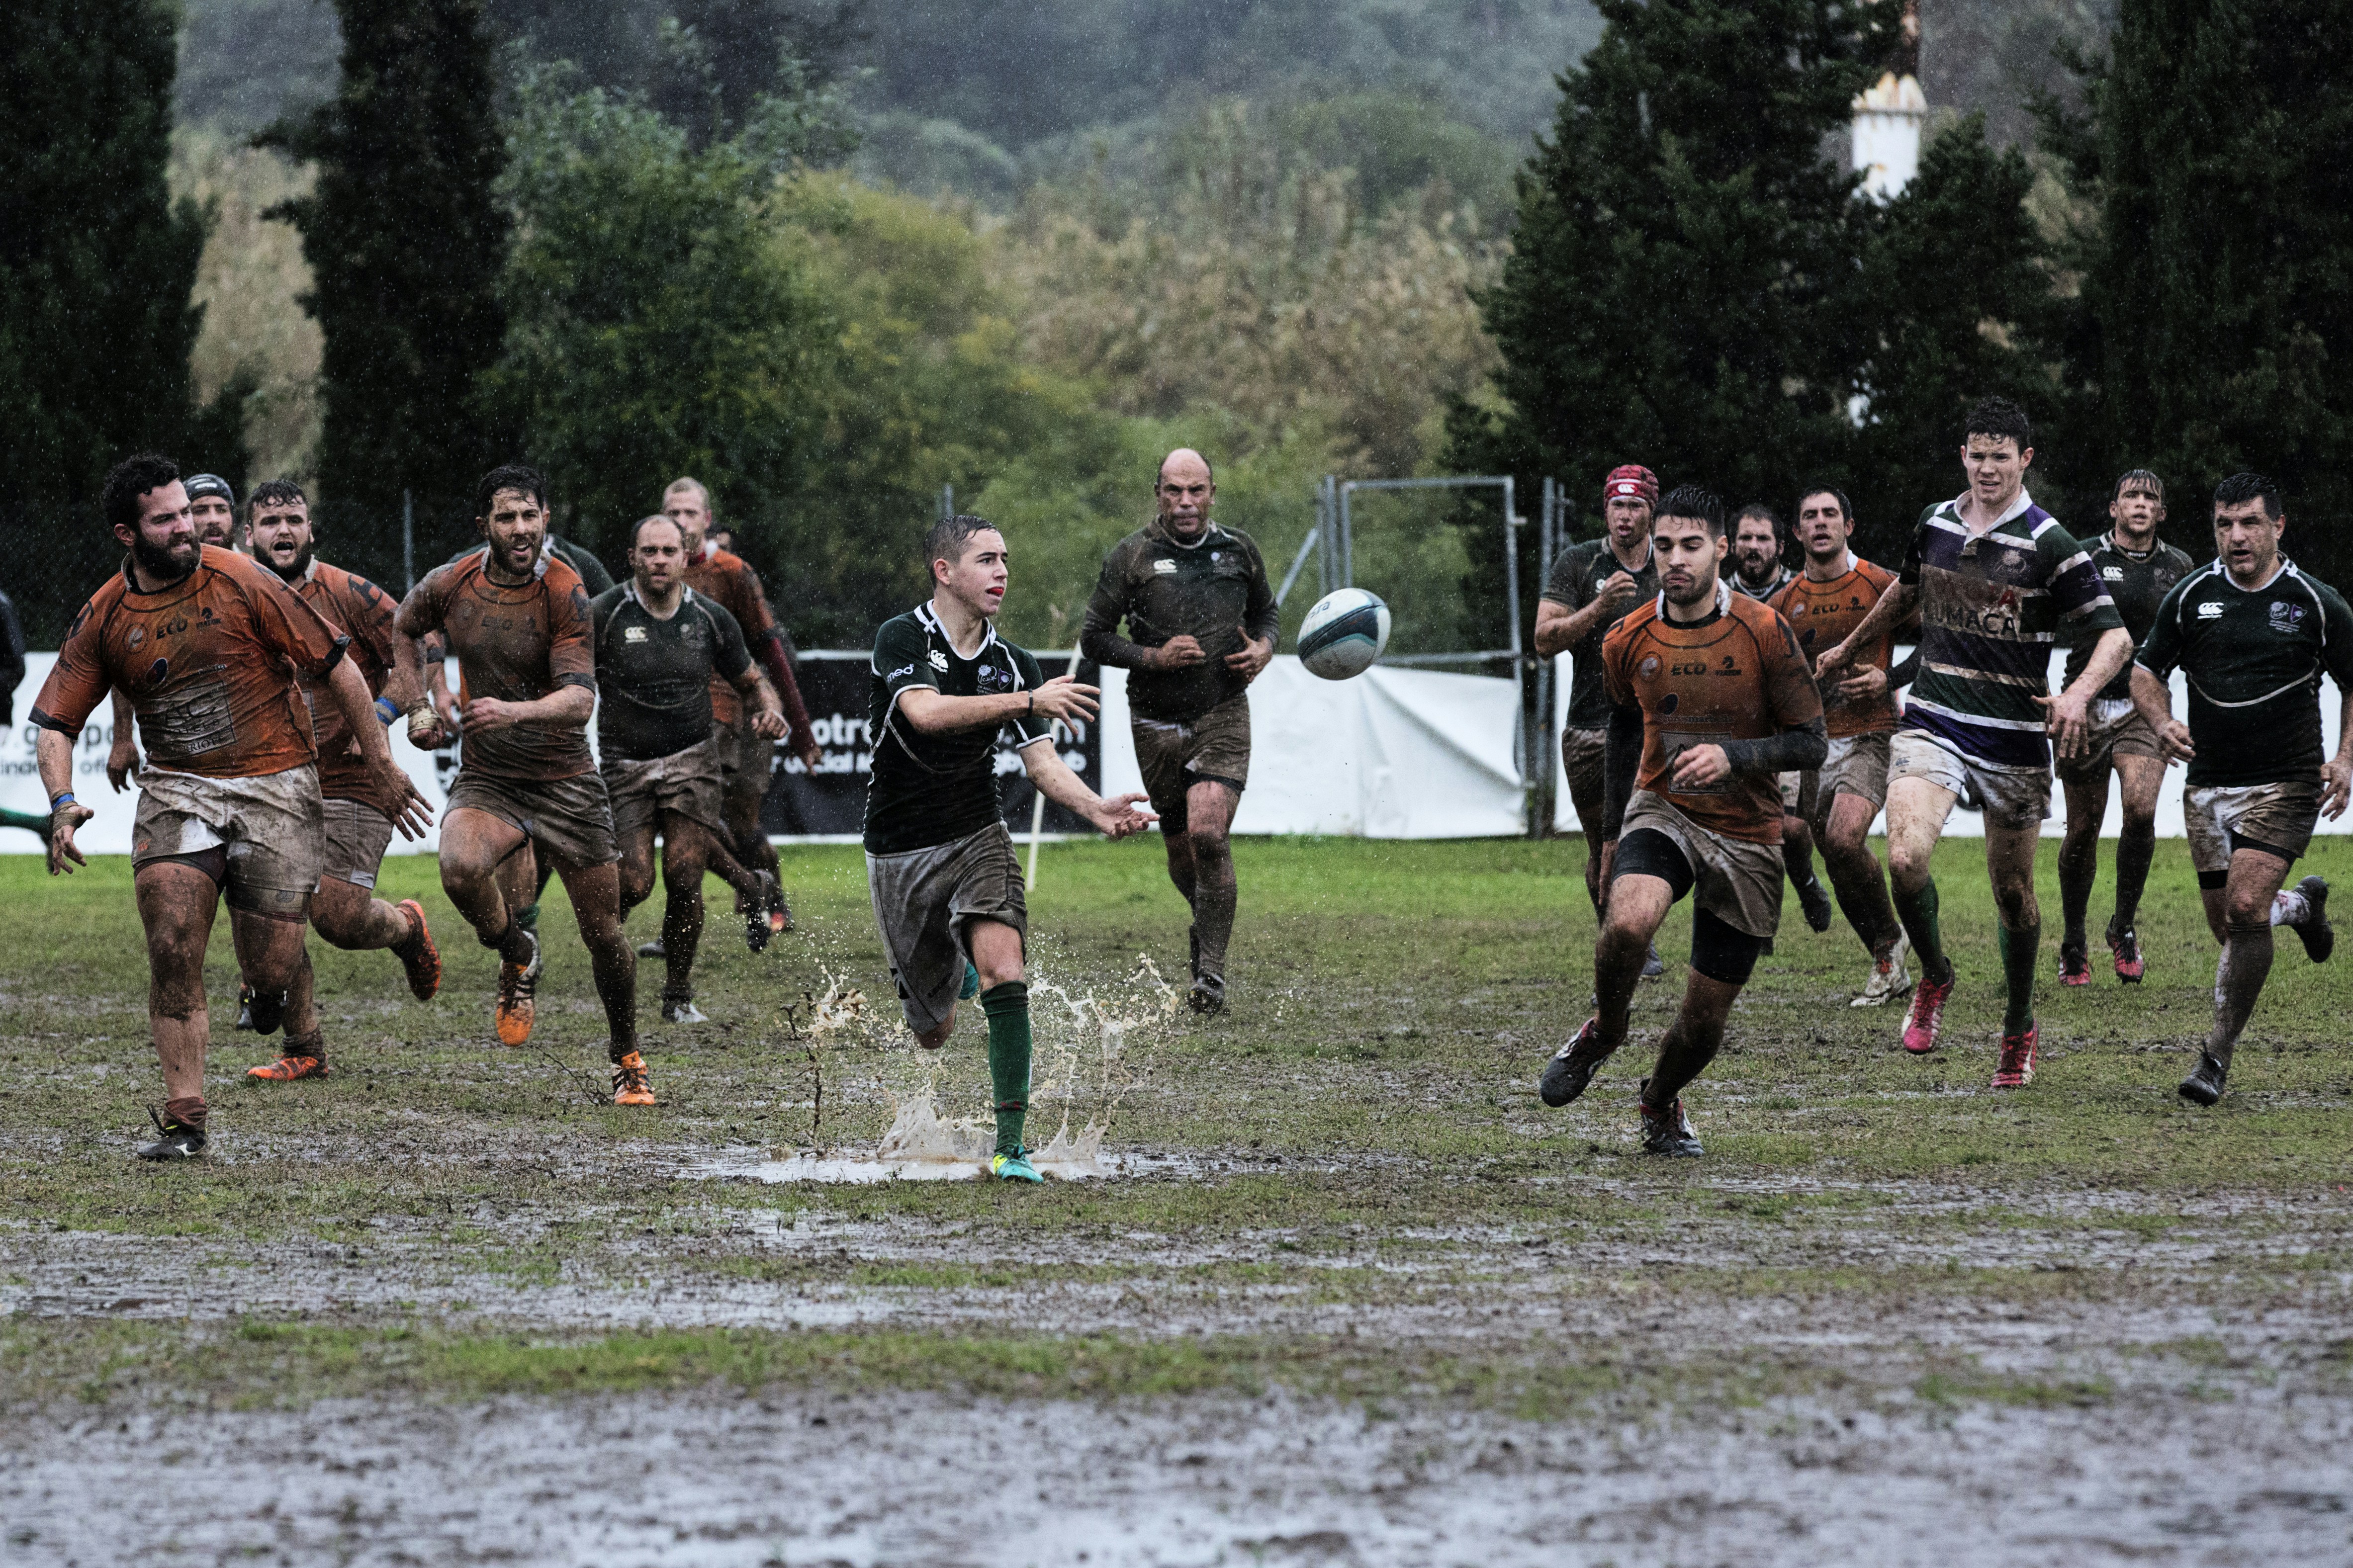 Partido disputado el 12-02-2017 bajo una intensa lluvia entre el Rugby Facultad de Económicas Málaga y el Club de Rugby Málaga B en el Bahías Park de Marbella.